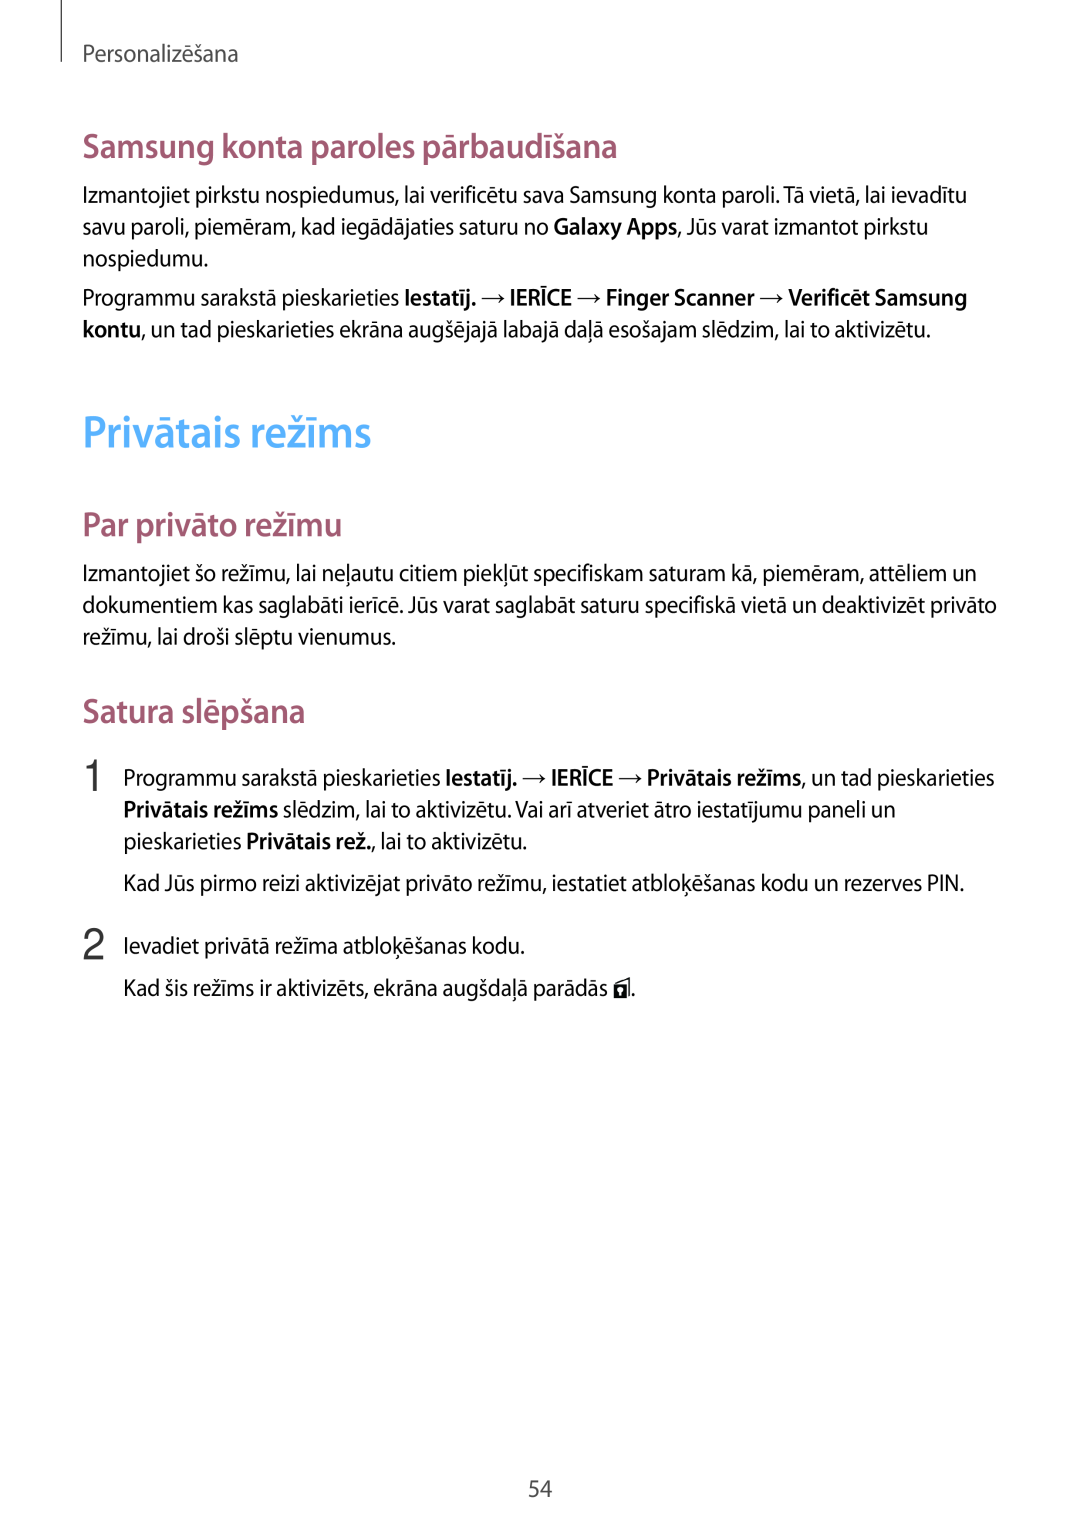 Samsung SM-T800NTSASEB manual Privātais režīms, Samsung konta paroles pārbaudīšana, Par privāto režīmu, Satura slēpšana 